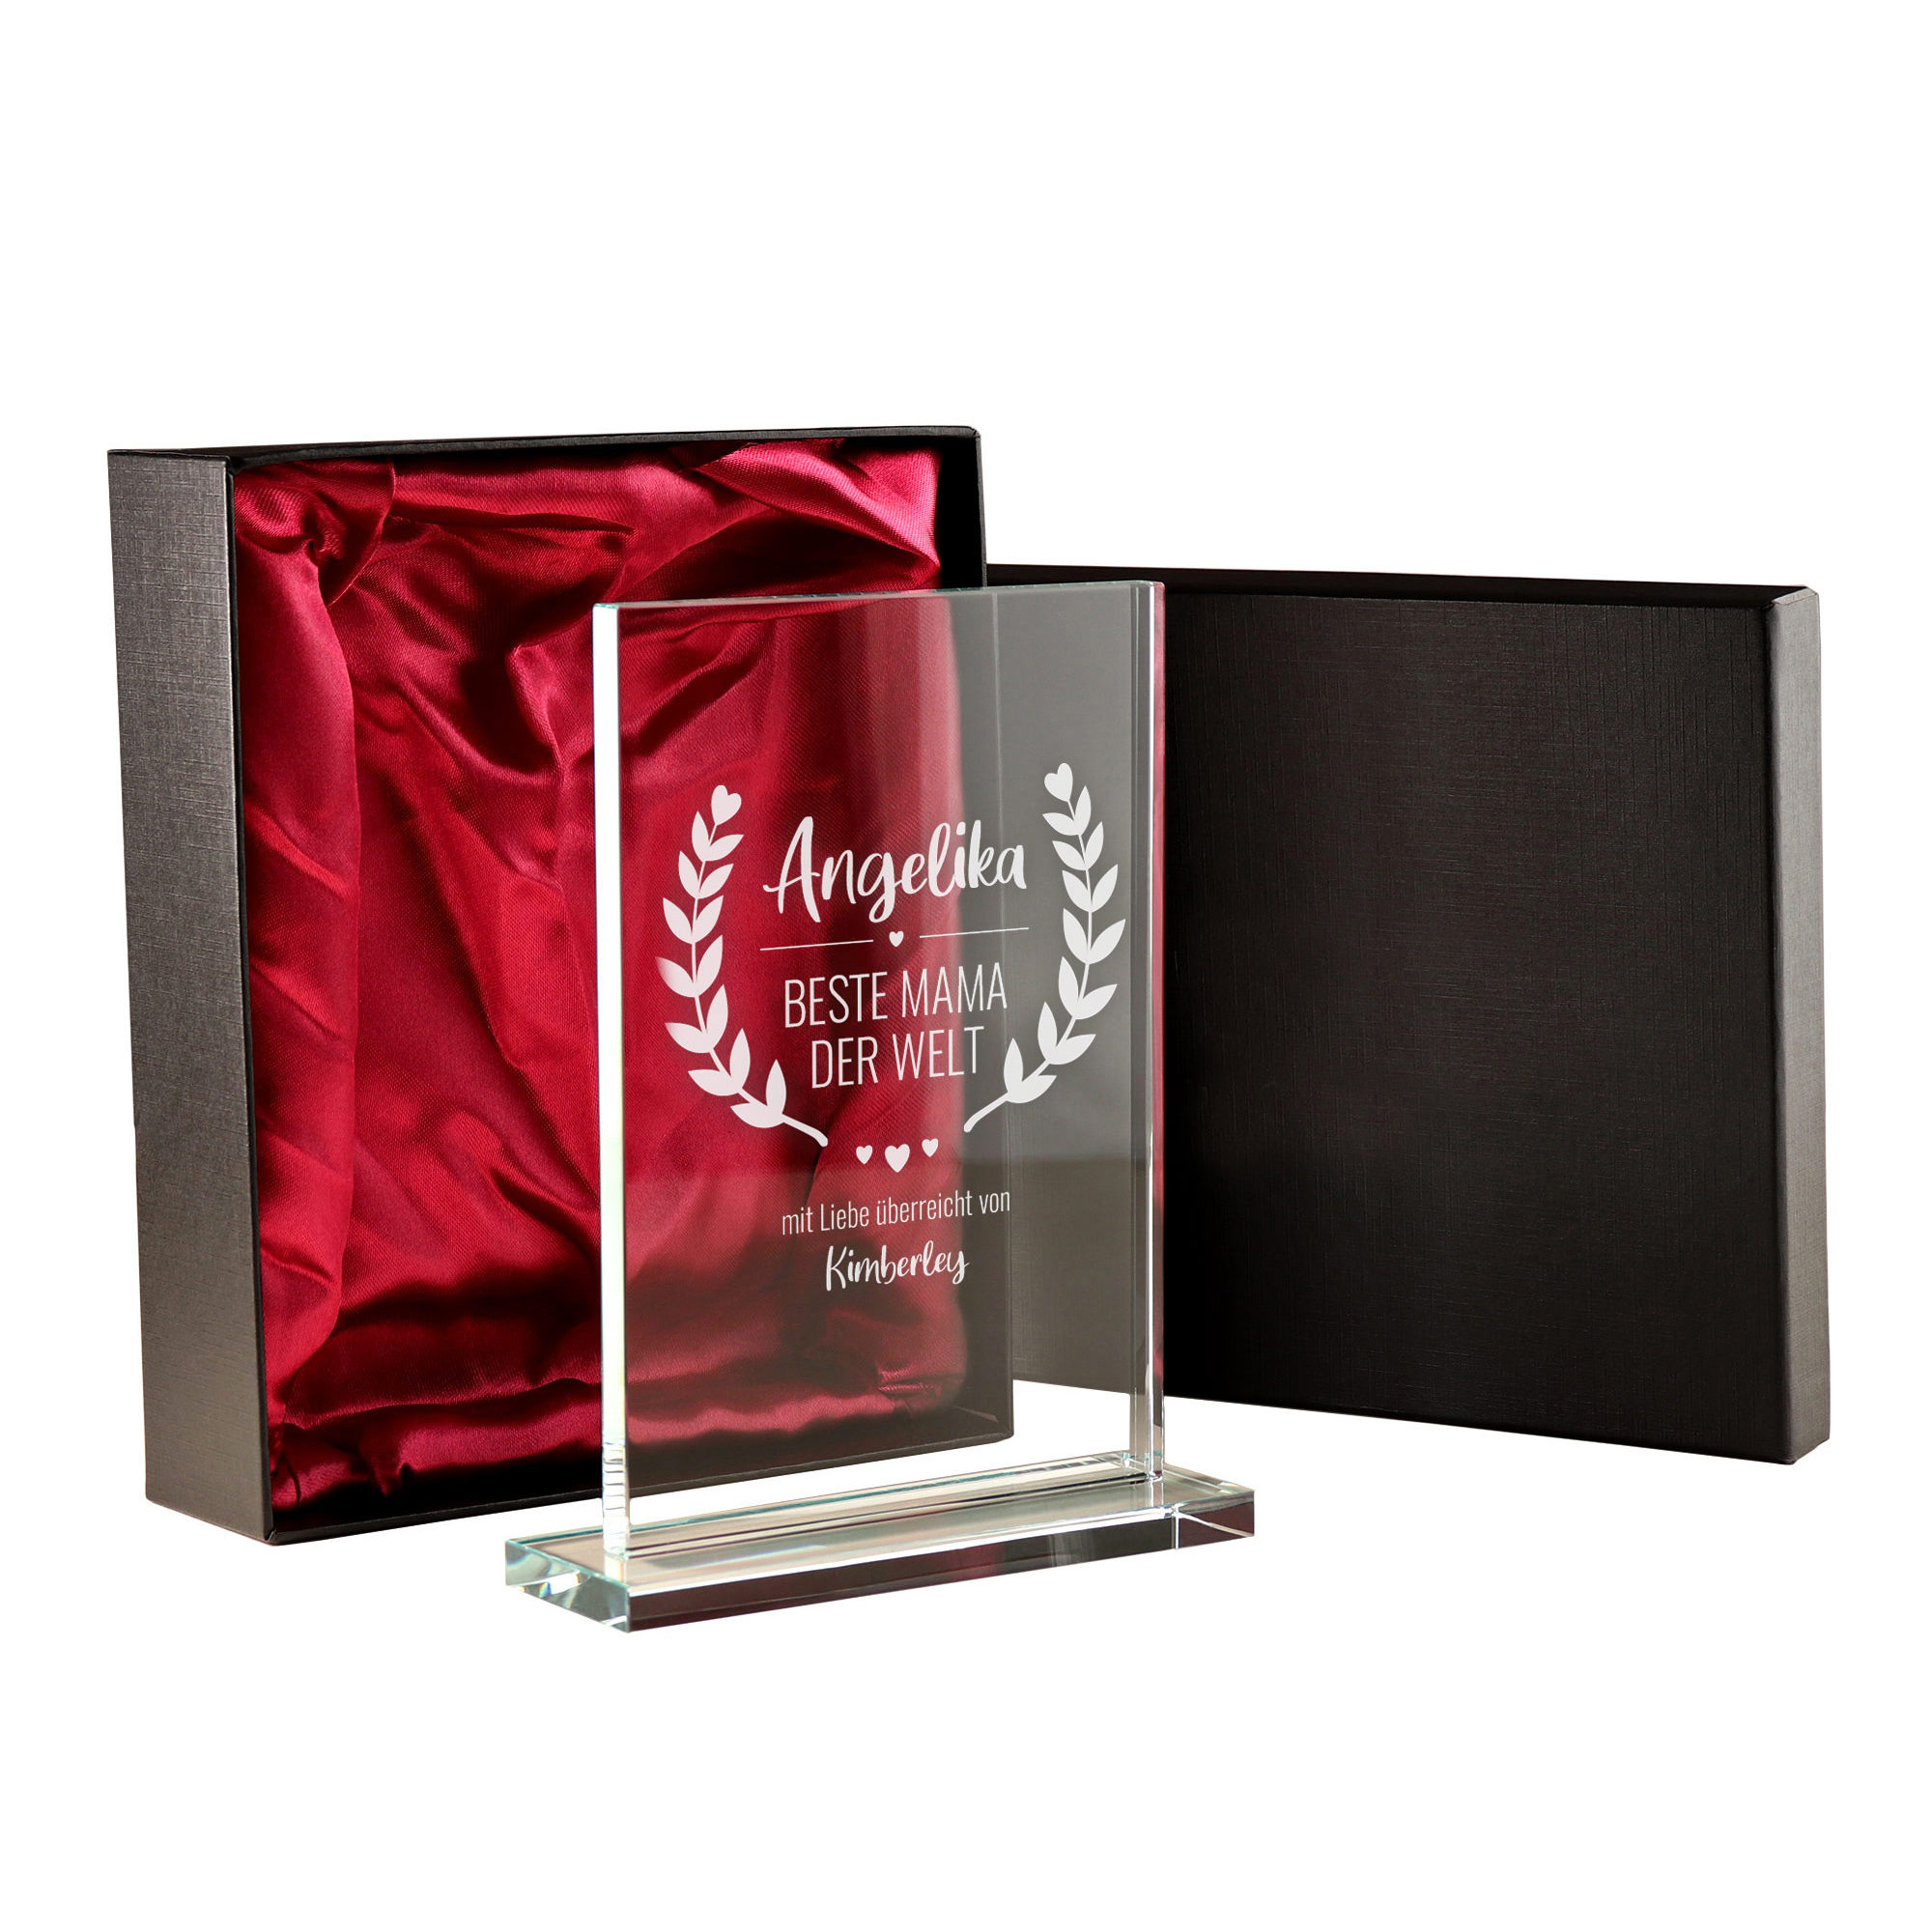 Personalisierter Glaspokal - Auszeichnung für Beste Mama 2162-167-MZ - 4